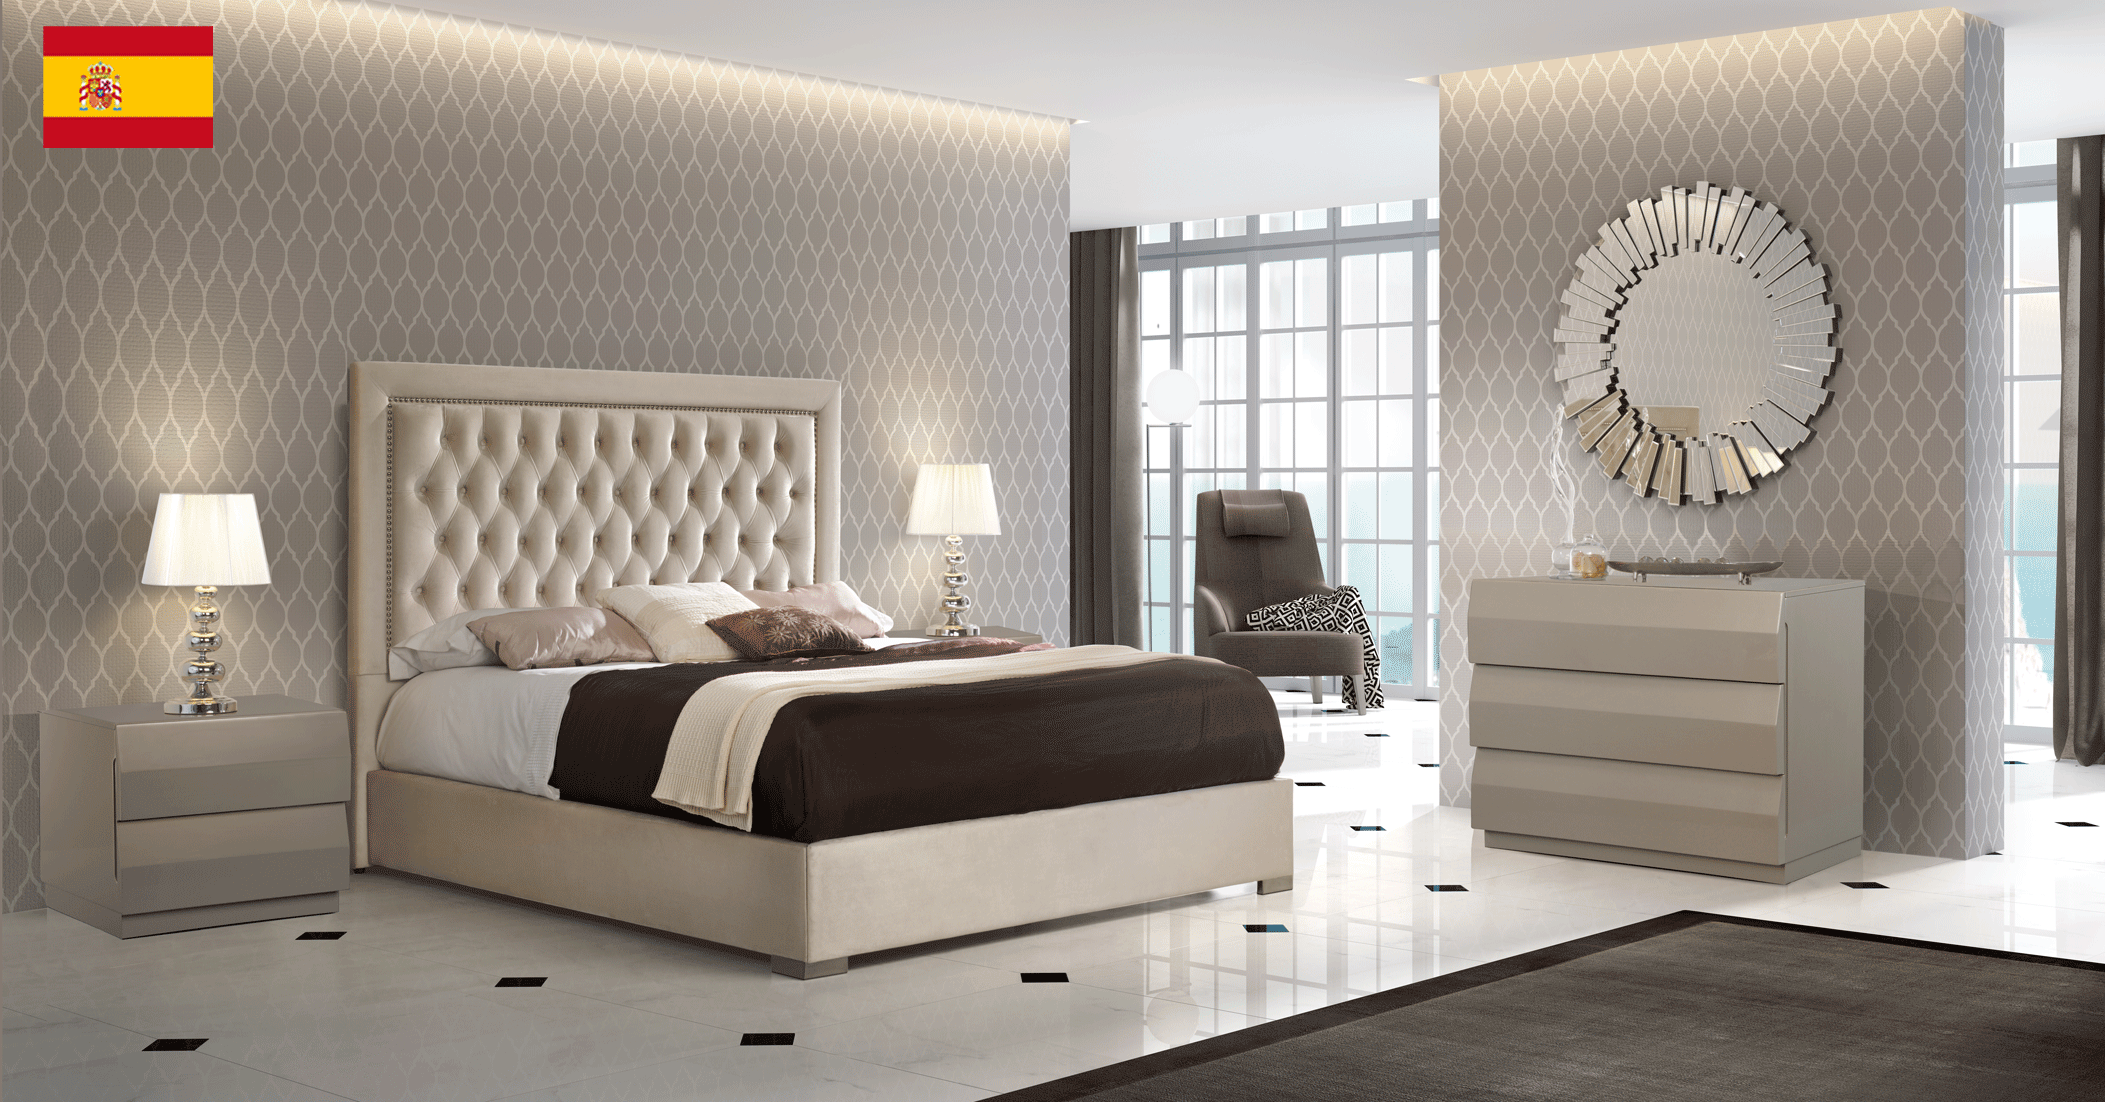 Bedroom Furniture Nightstands Adagio Bedroom w/Storage, M152, C152, E100